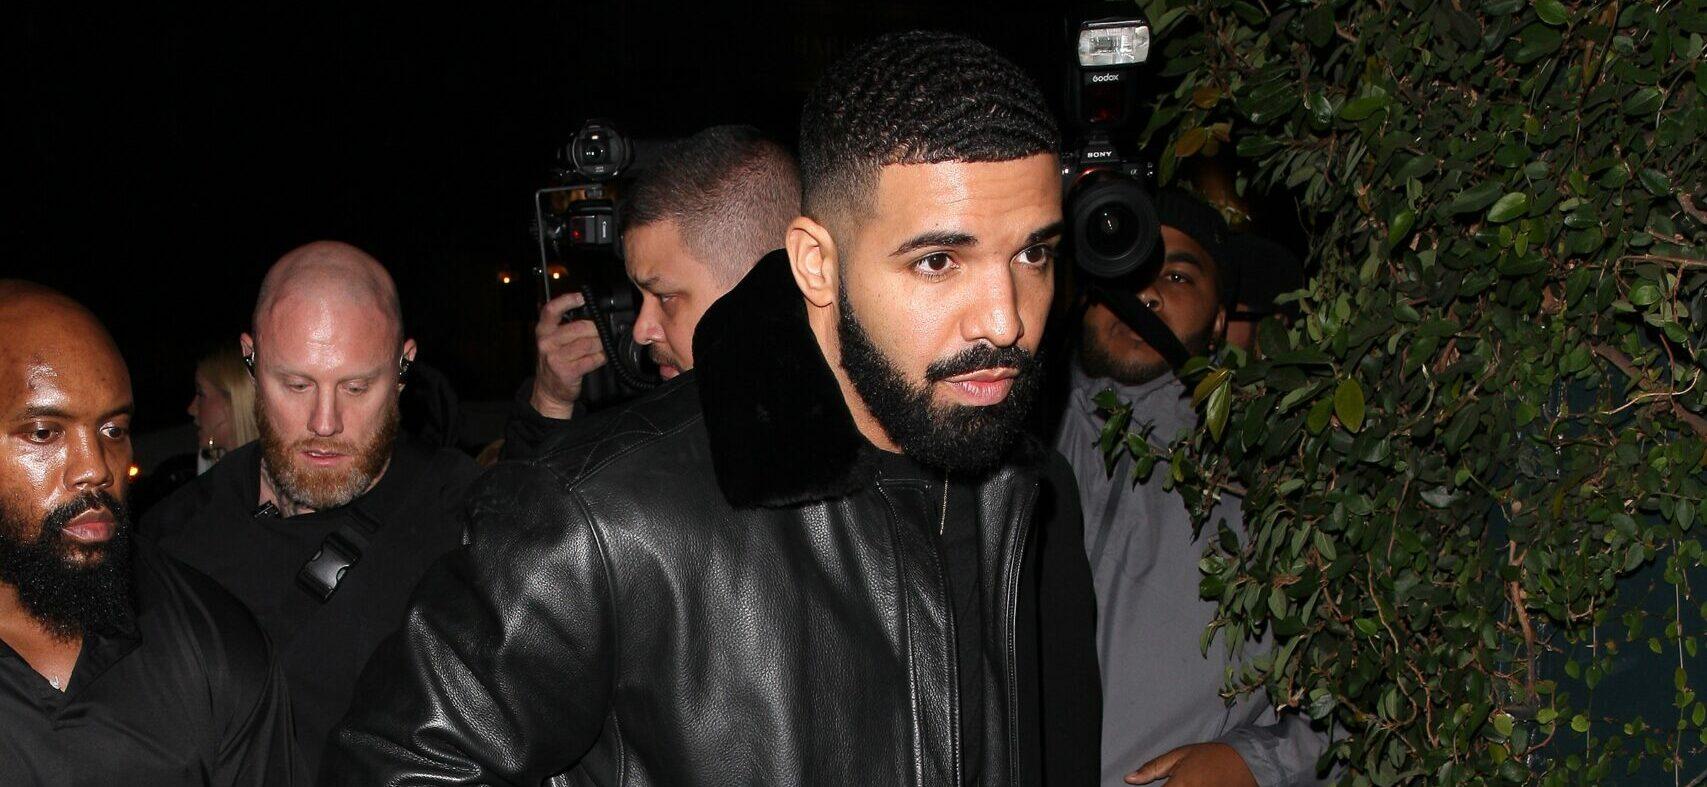 Was Drake Wearing Fake Air Jordans?